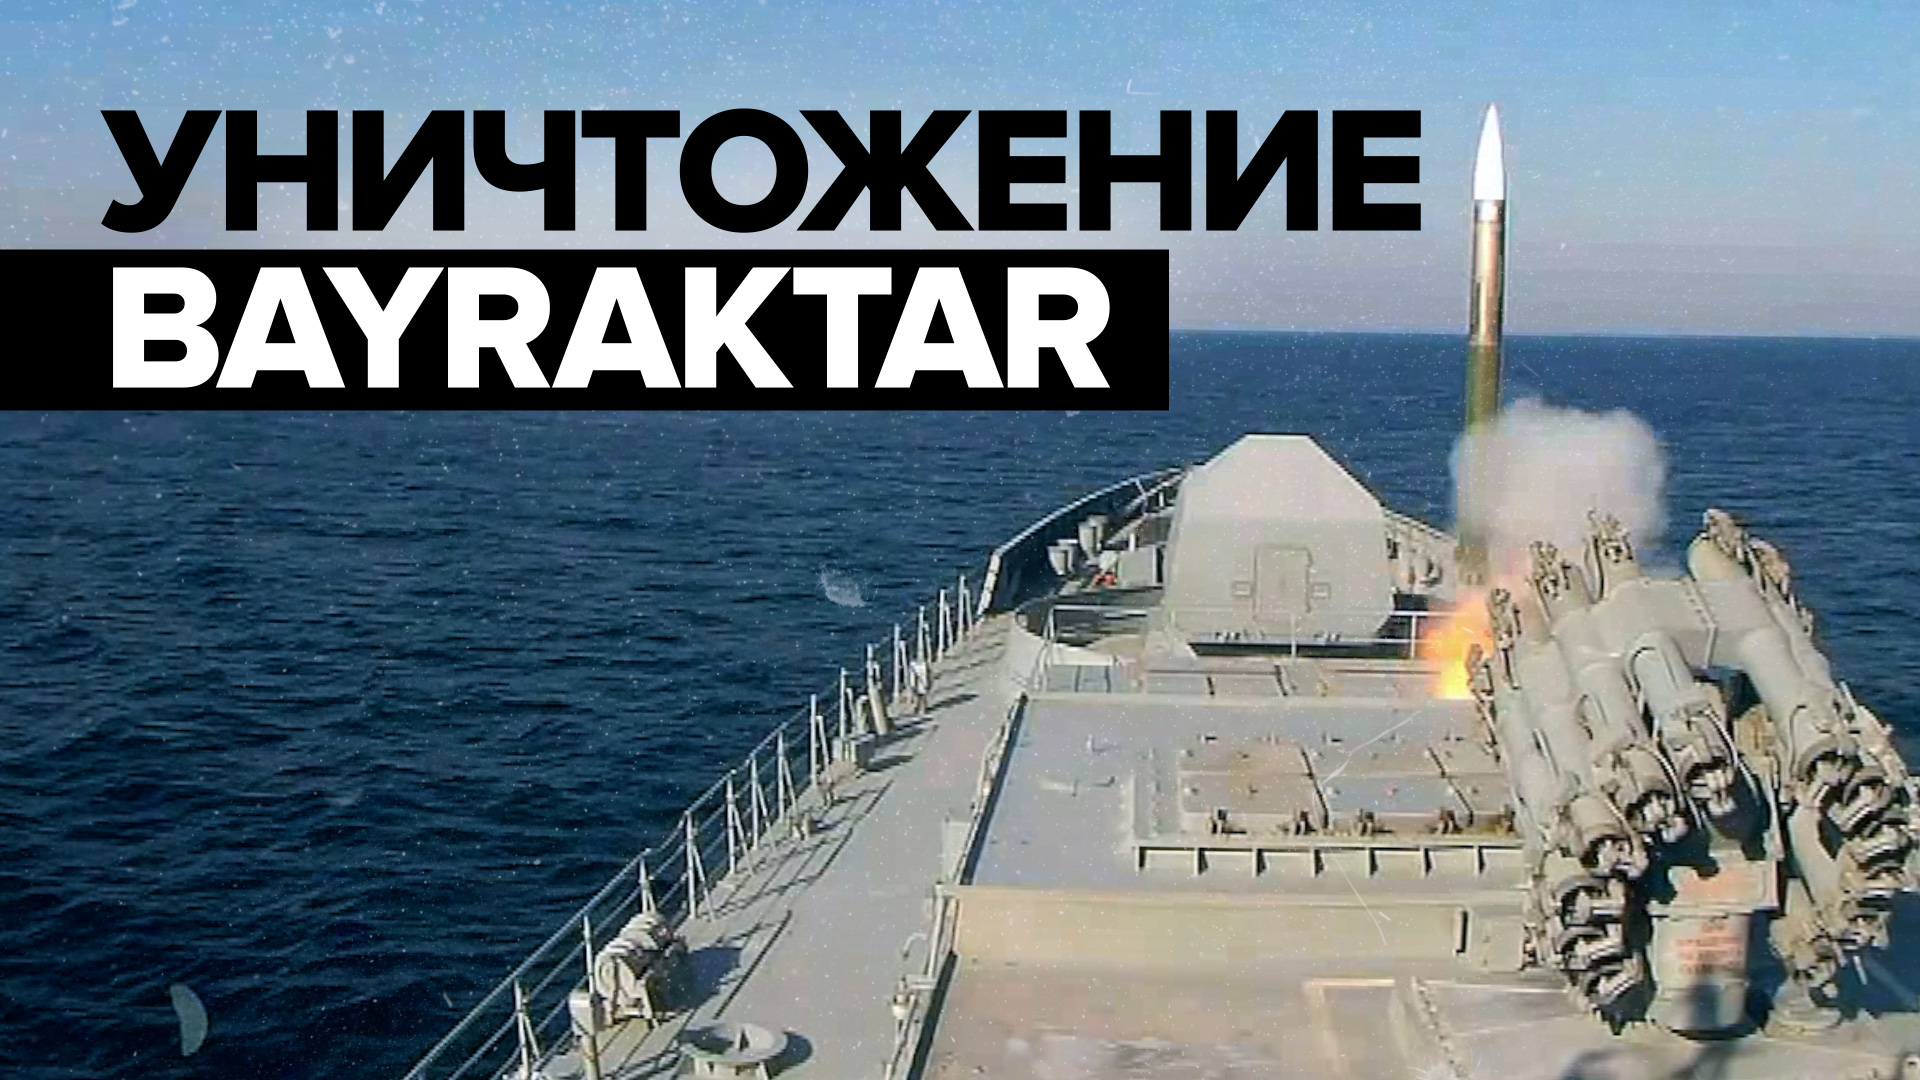 Фрегат Черноморского флота уничтожил беспилотник Bayraktar — видео